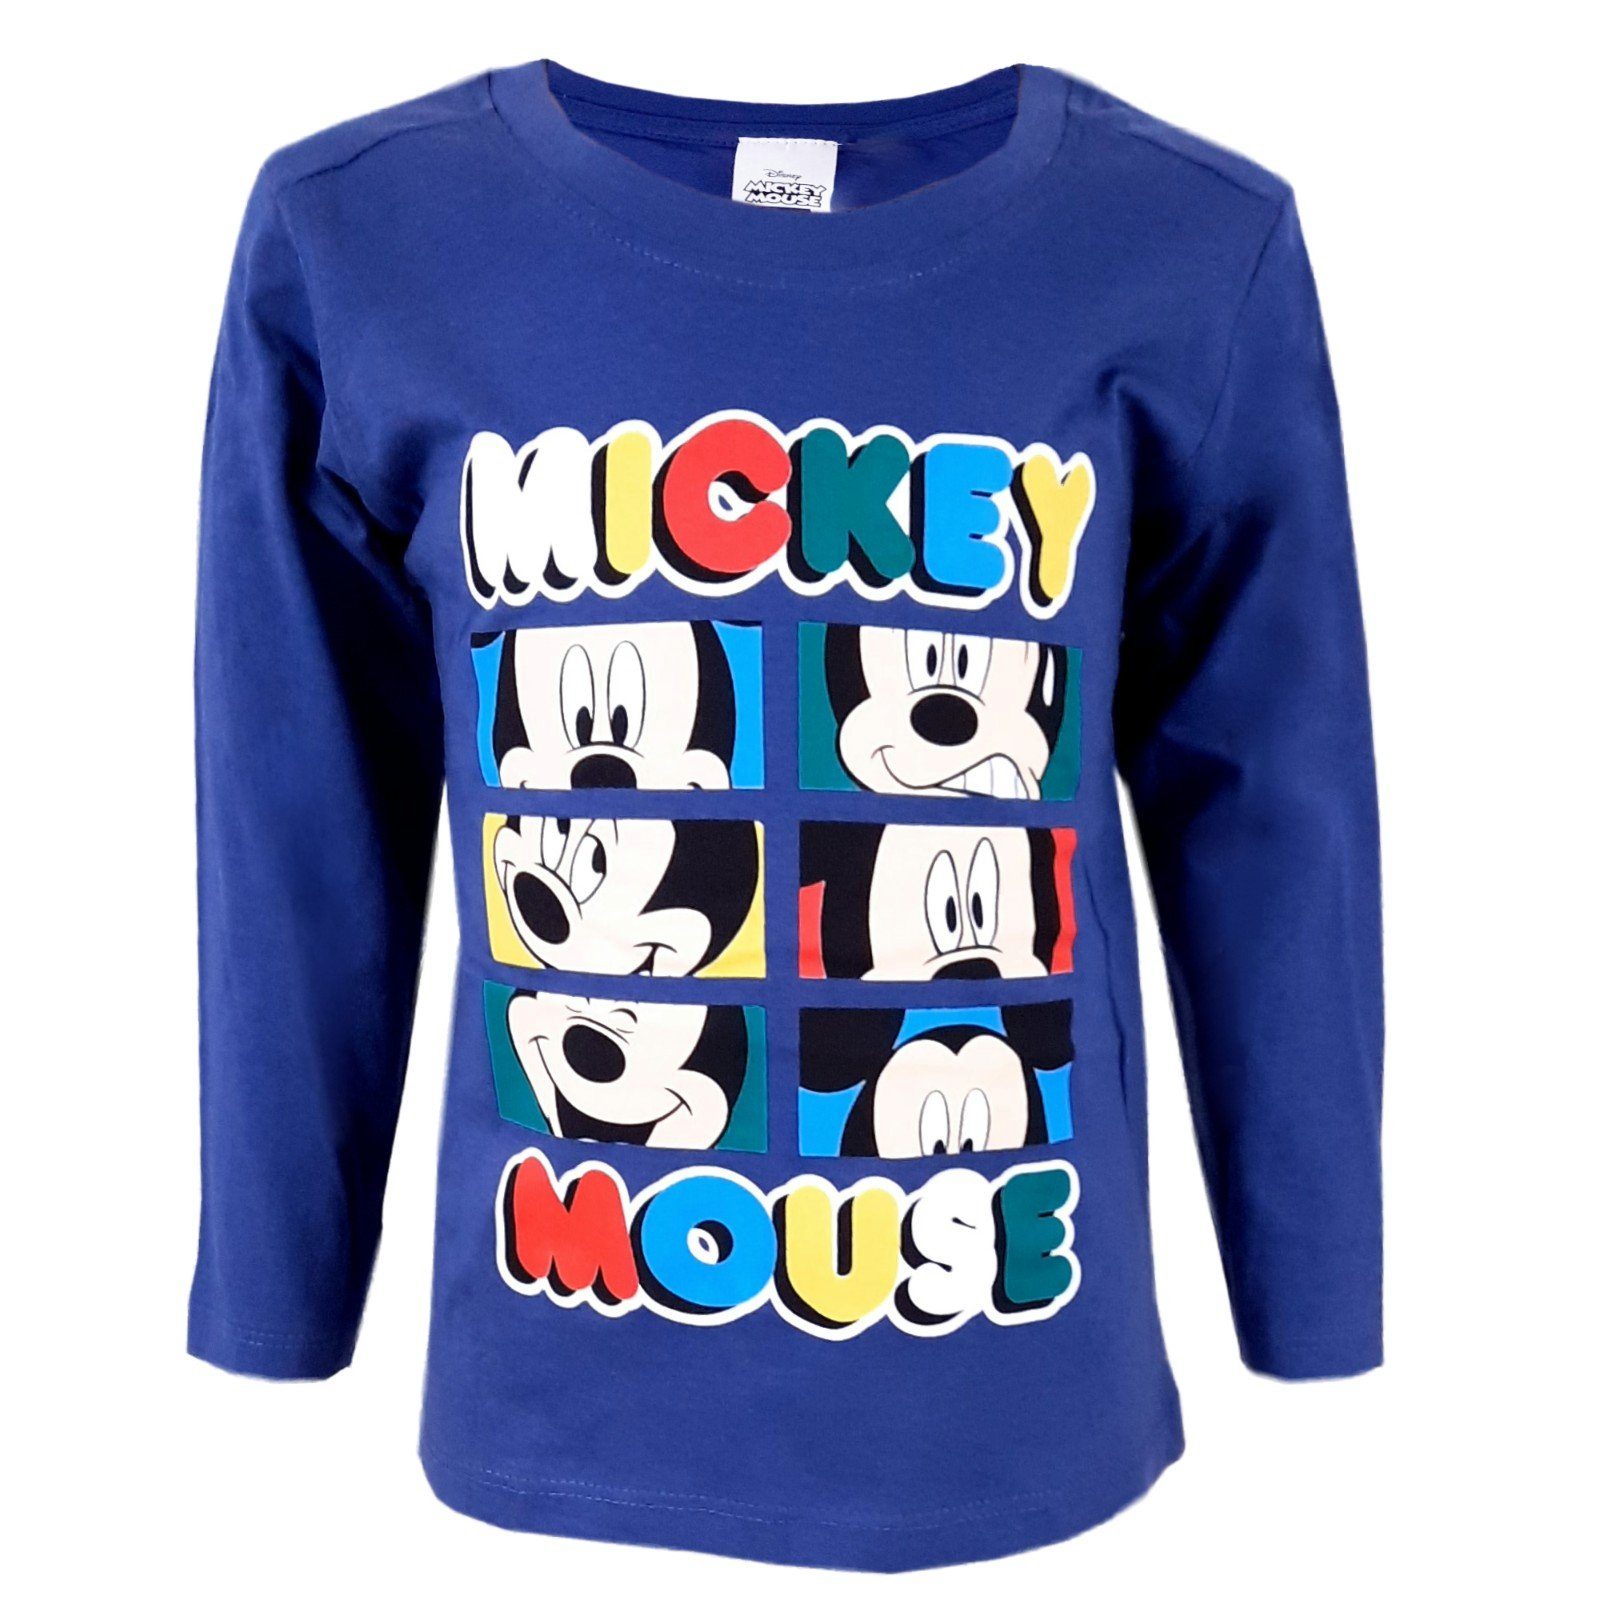 Disney Mickey Mouse Langarmshirt Kinder Shirt Gr. 92 bis 116, 100% Baumwolle